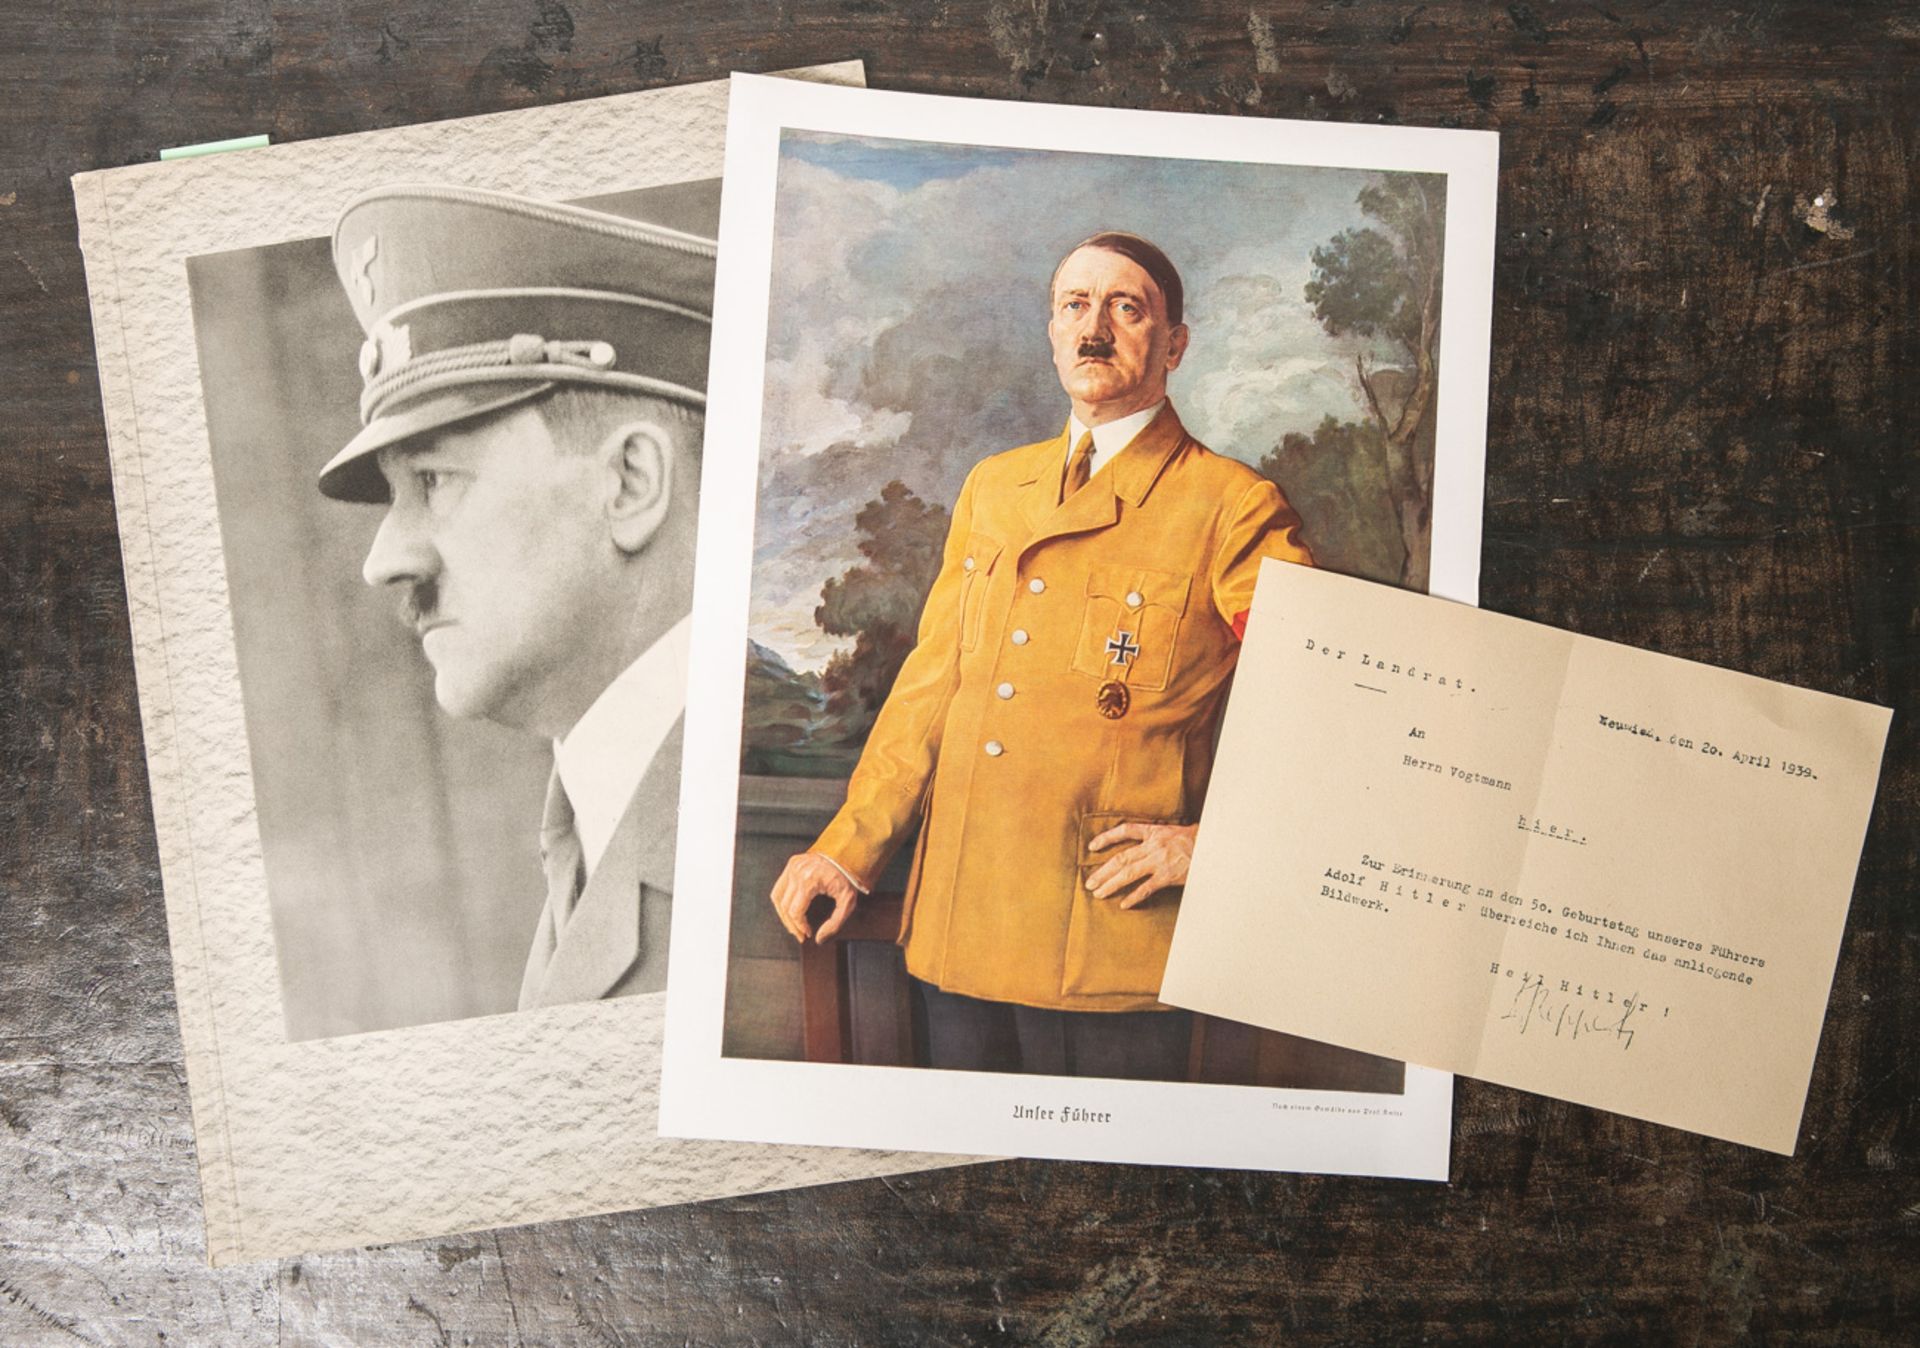 "Illustrierter Beobachter-Unser Führer-zum 50. Geburtstag Adolf Hitlers am 20. April